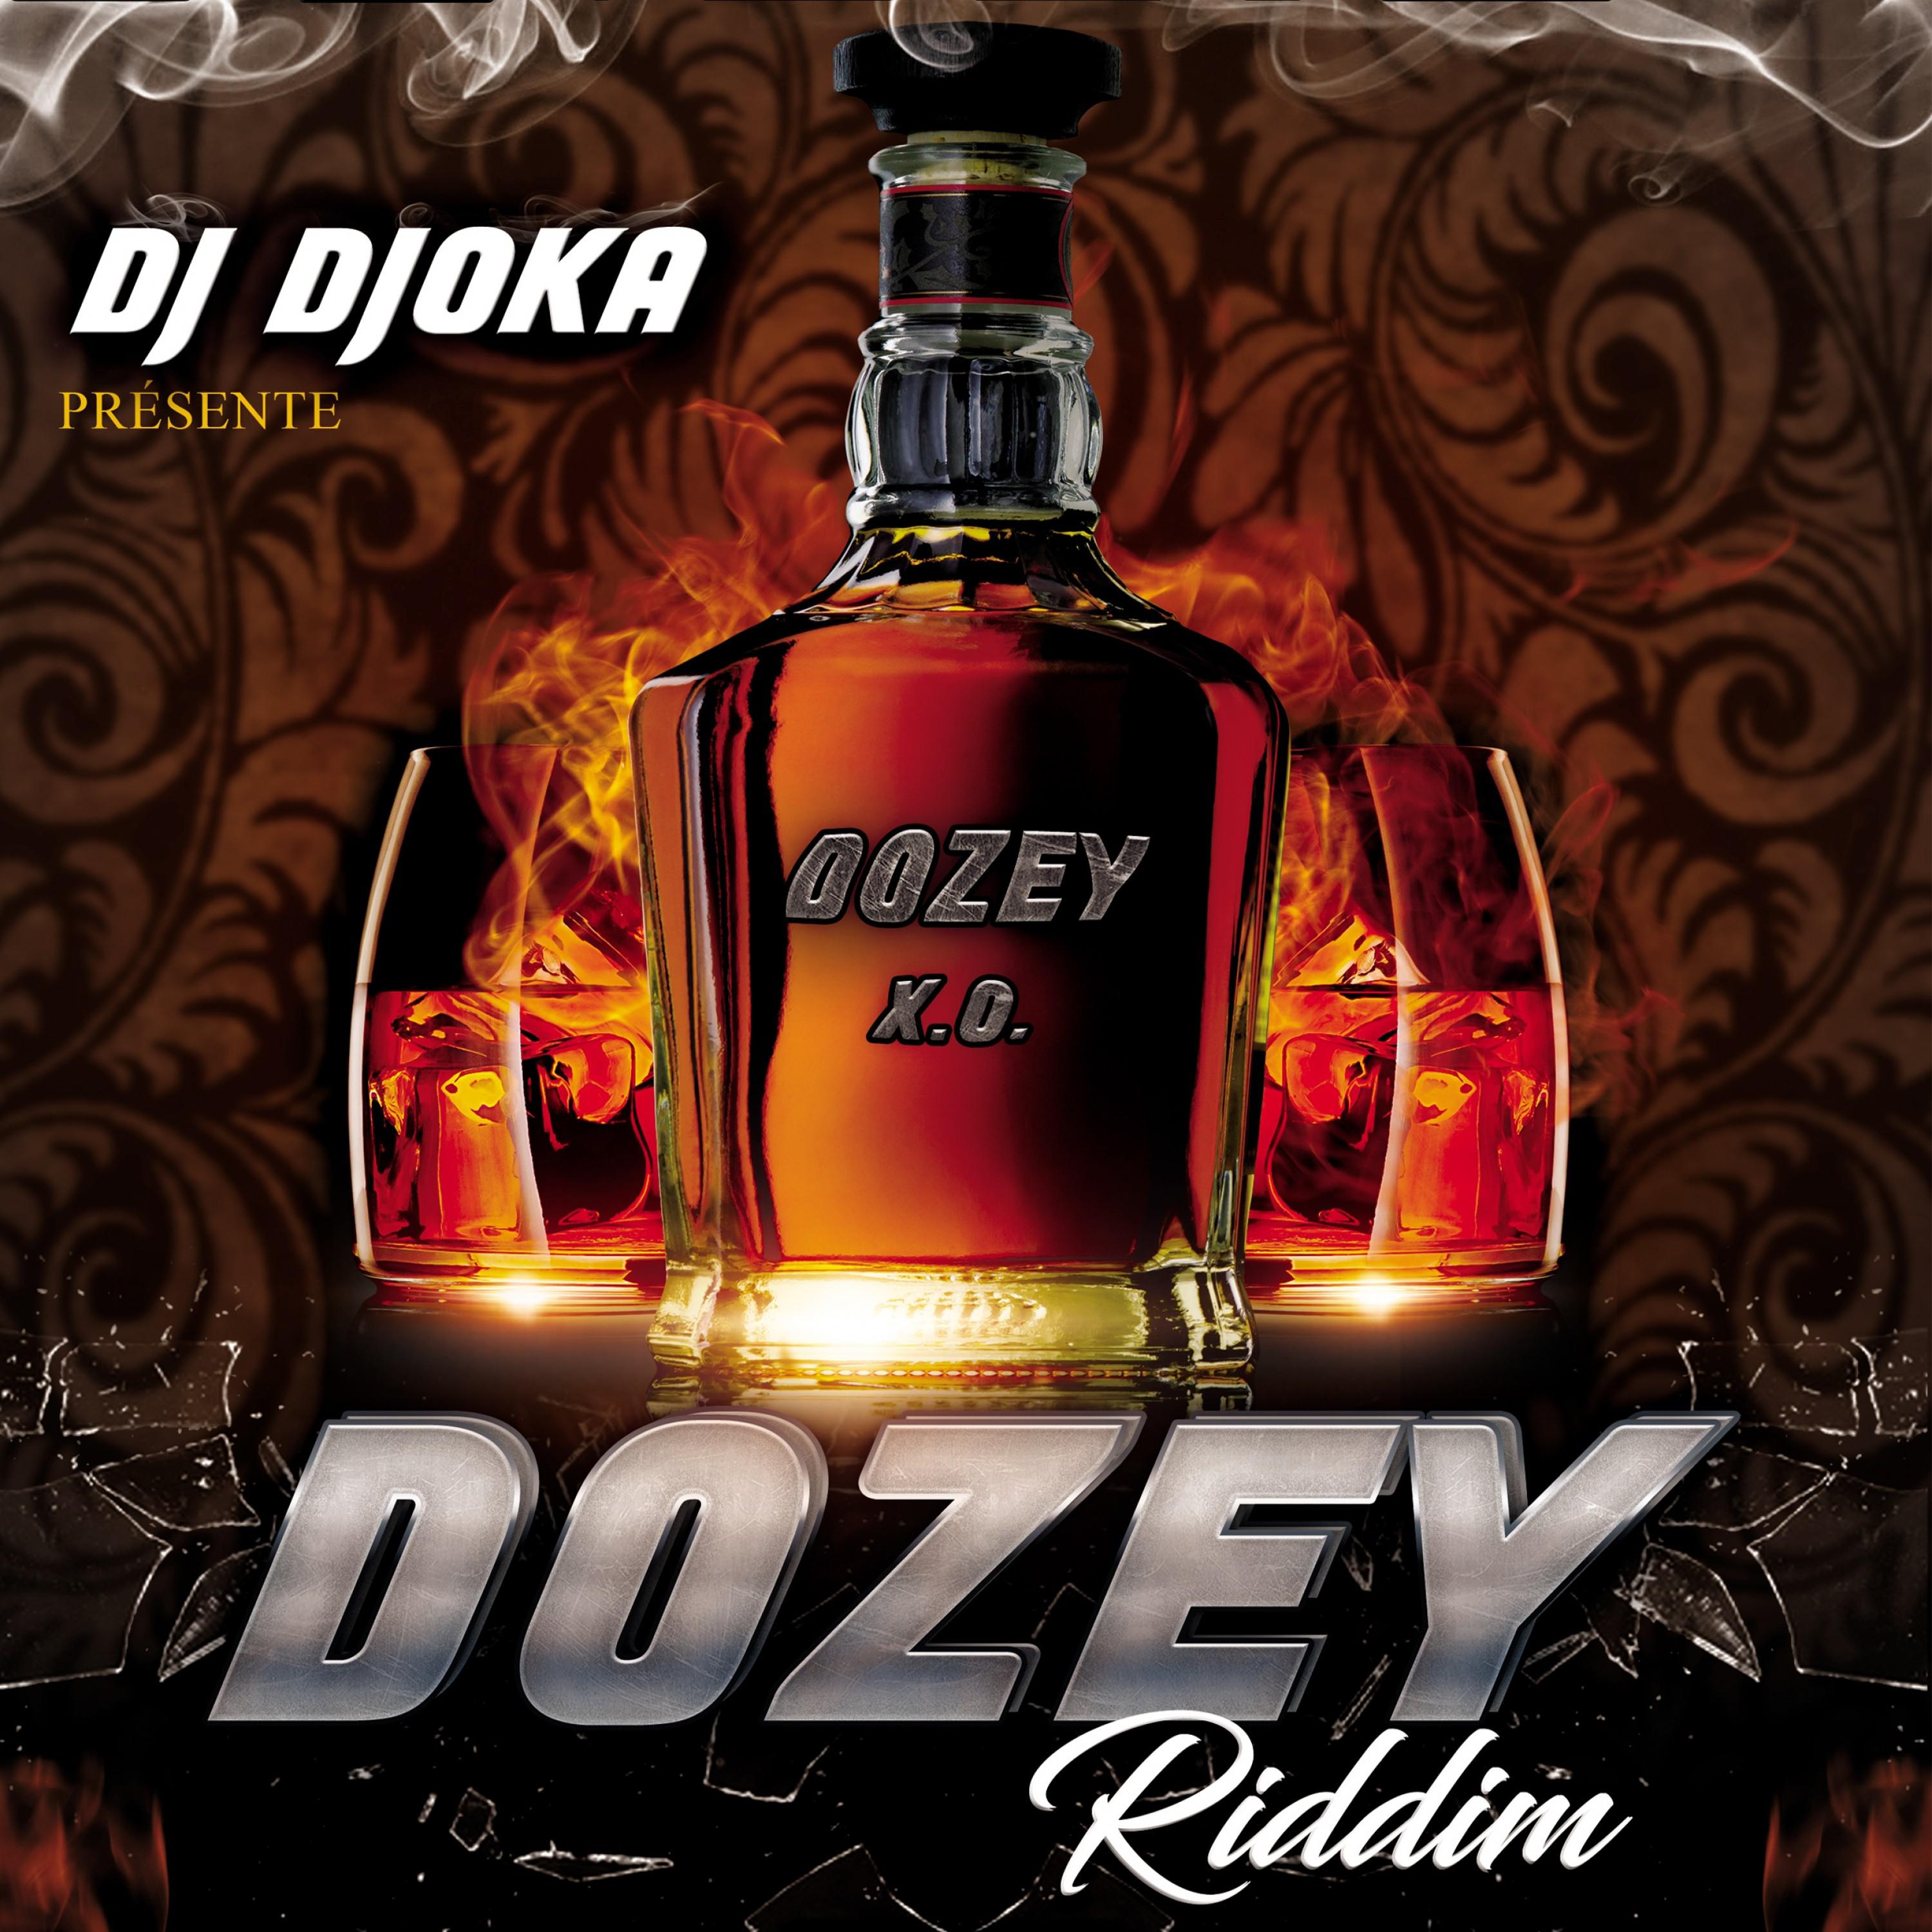 Dozey Riddim by DJ Djoka